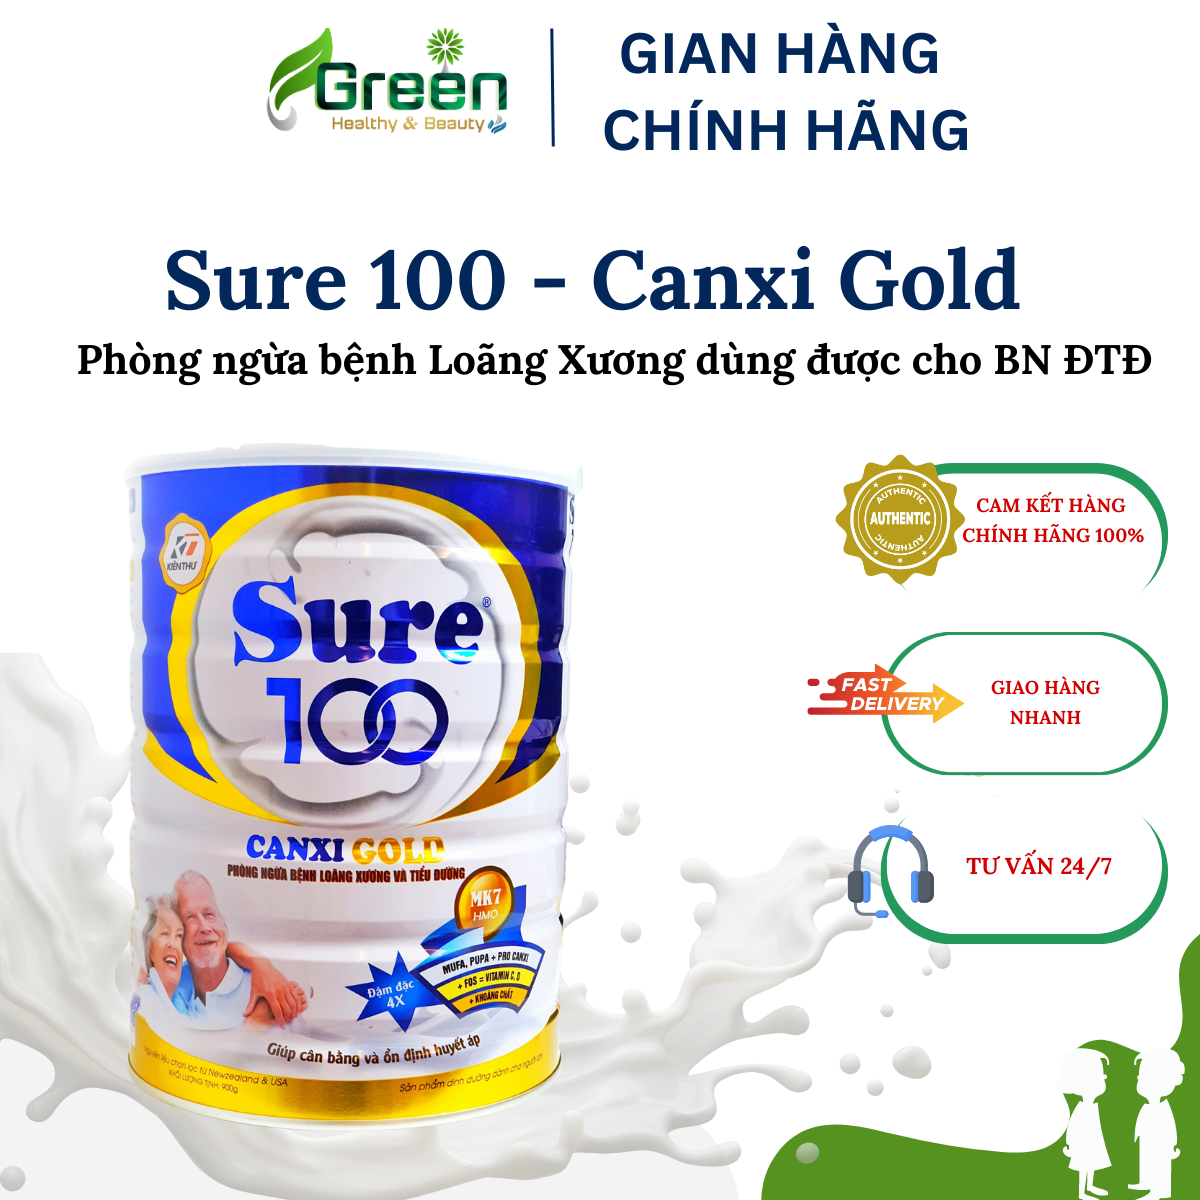 Sữa SURE 100 - CANXI GOLD: Phòng ngừa loãng xương và tiểu đường